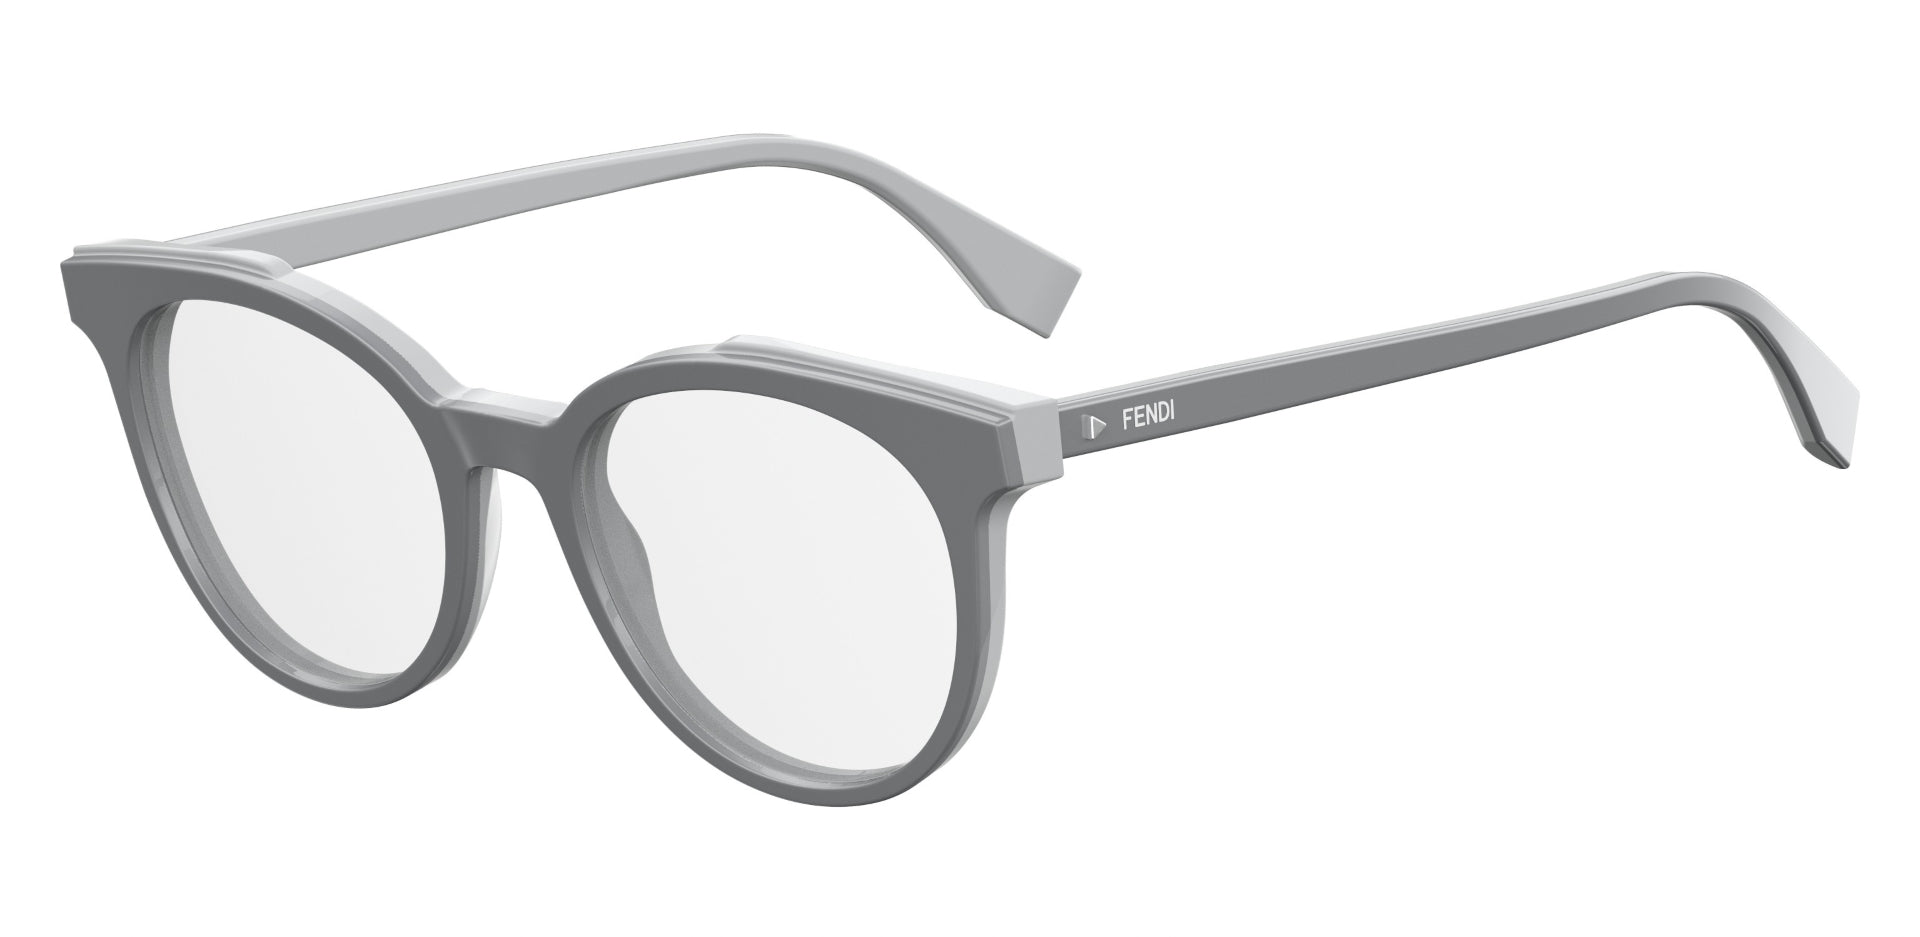 FENDI WOMAN PANTOS Eyeglasses-FF 0249 Size 50